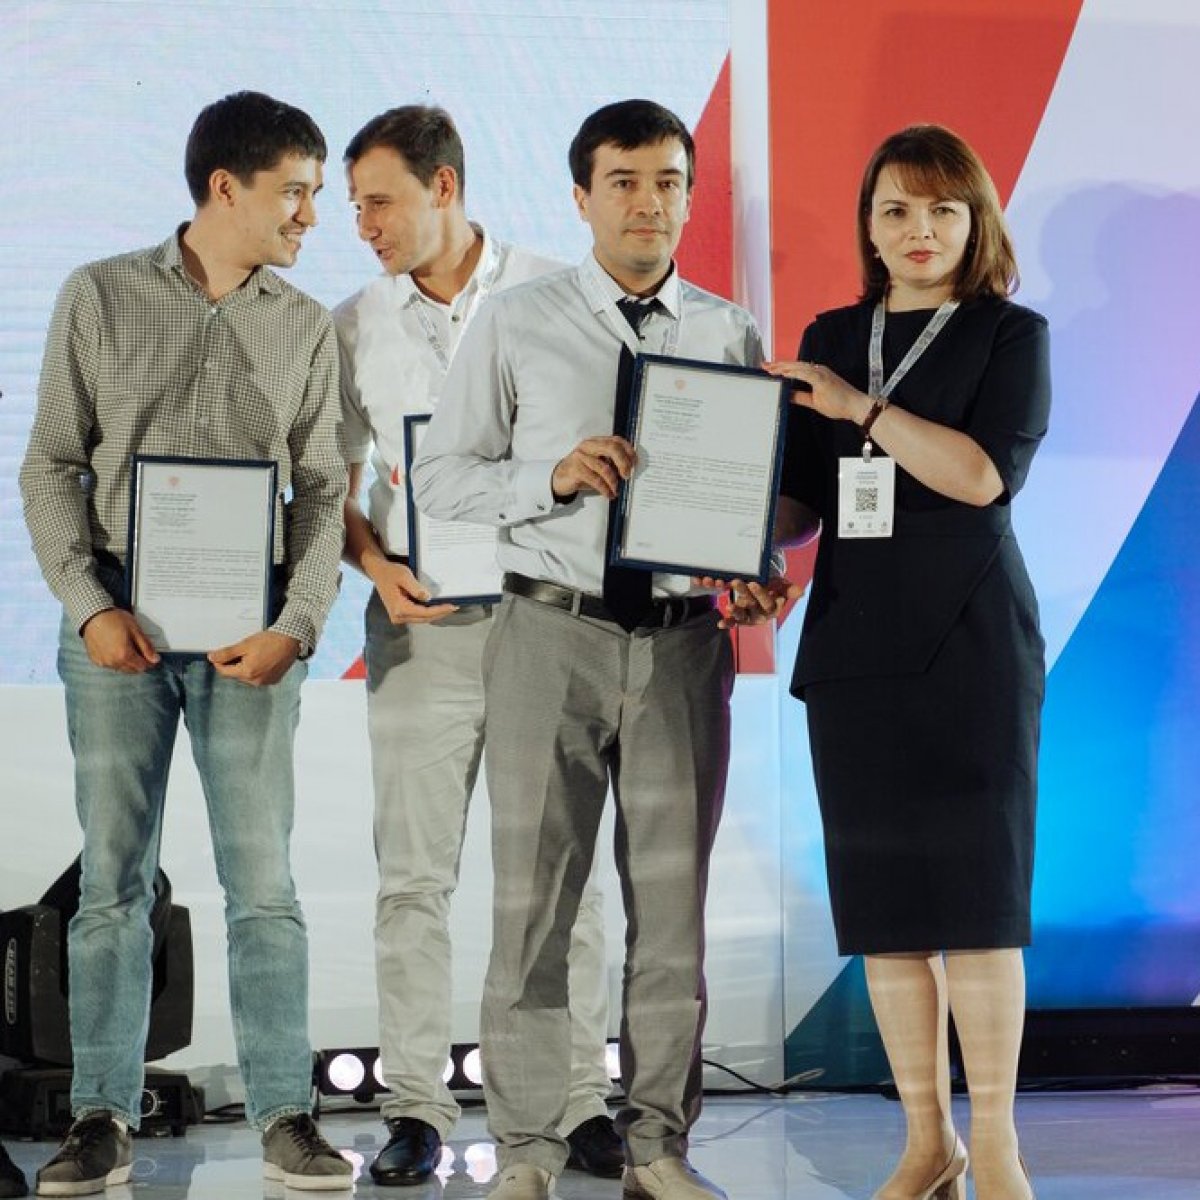 ➡На завершившемся Международном нефтегазовом молодежном форуме представители АГНИ собрали целую россыпь наград. Так